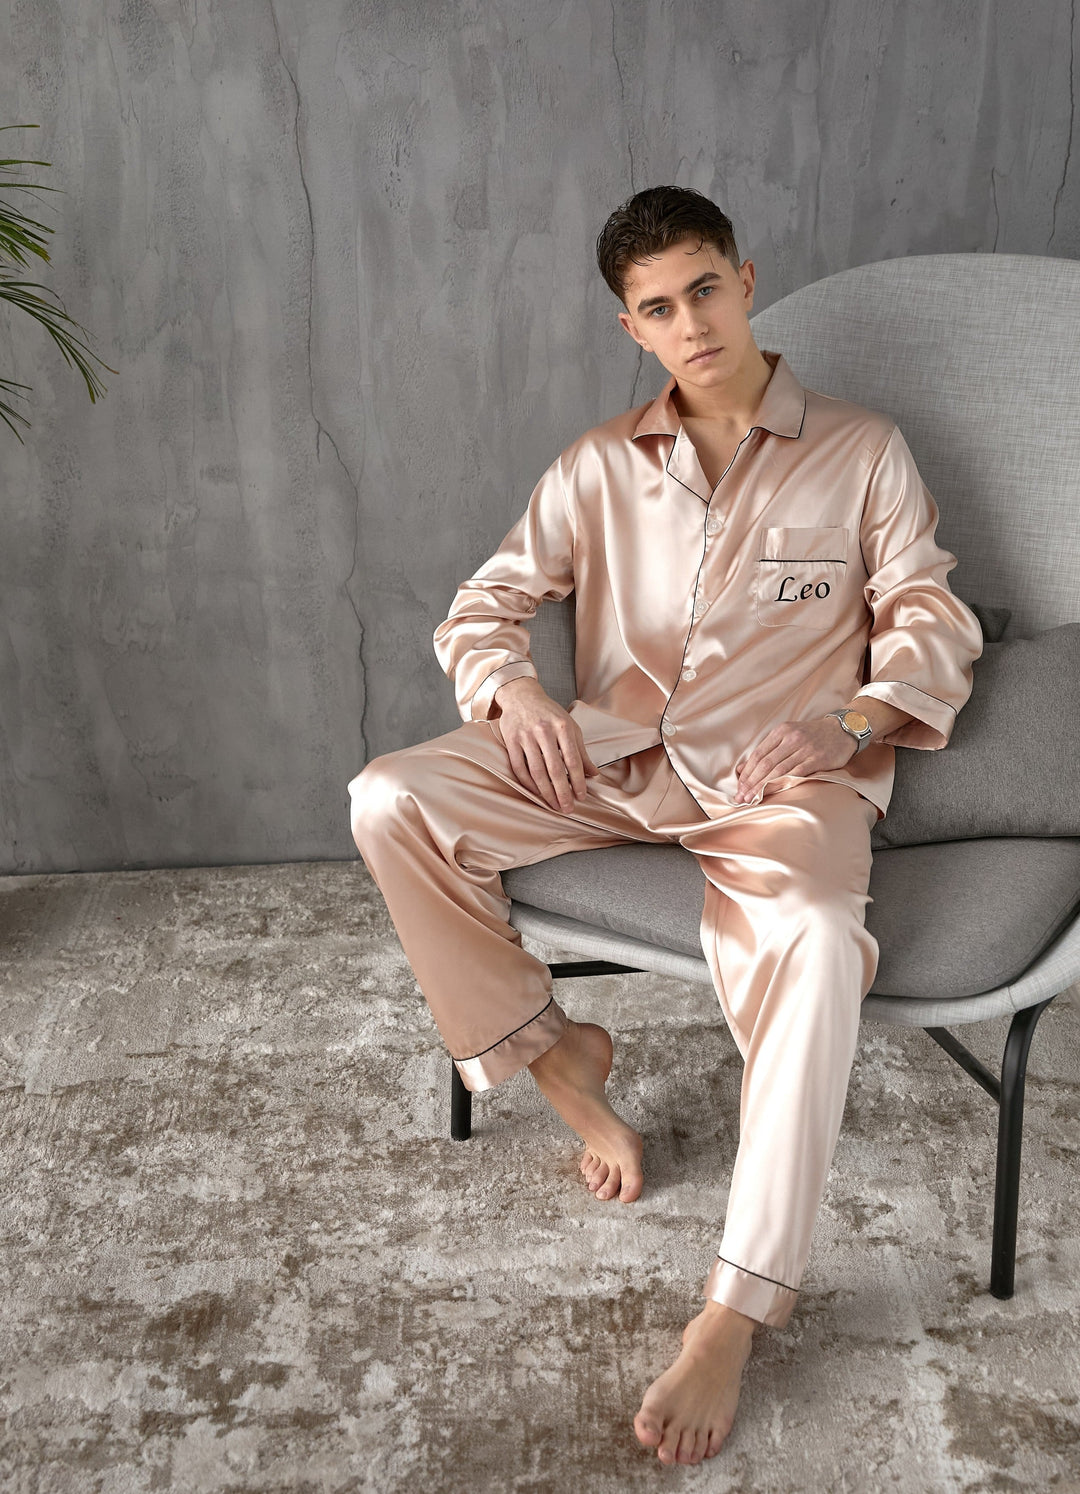 Personalized Men's Pajamas